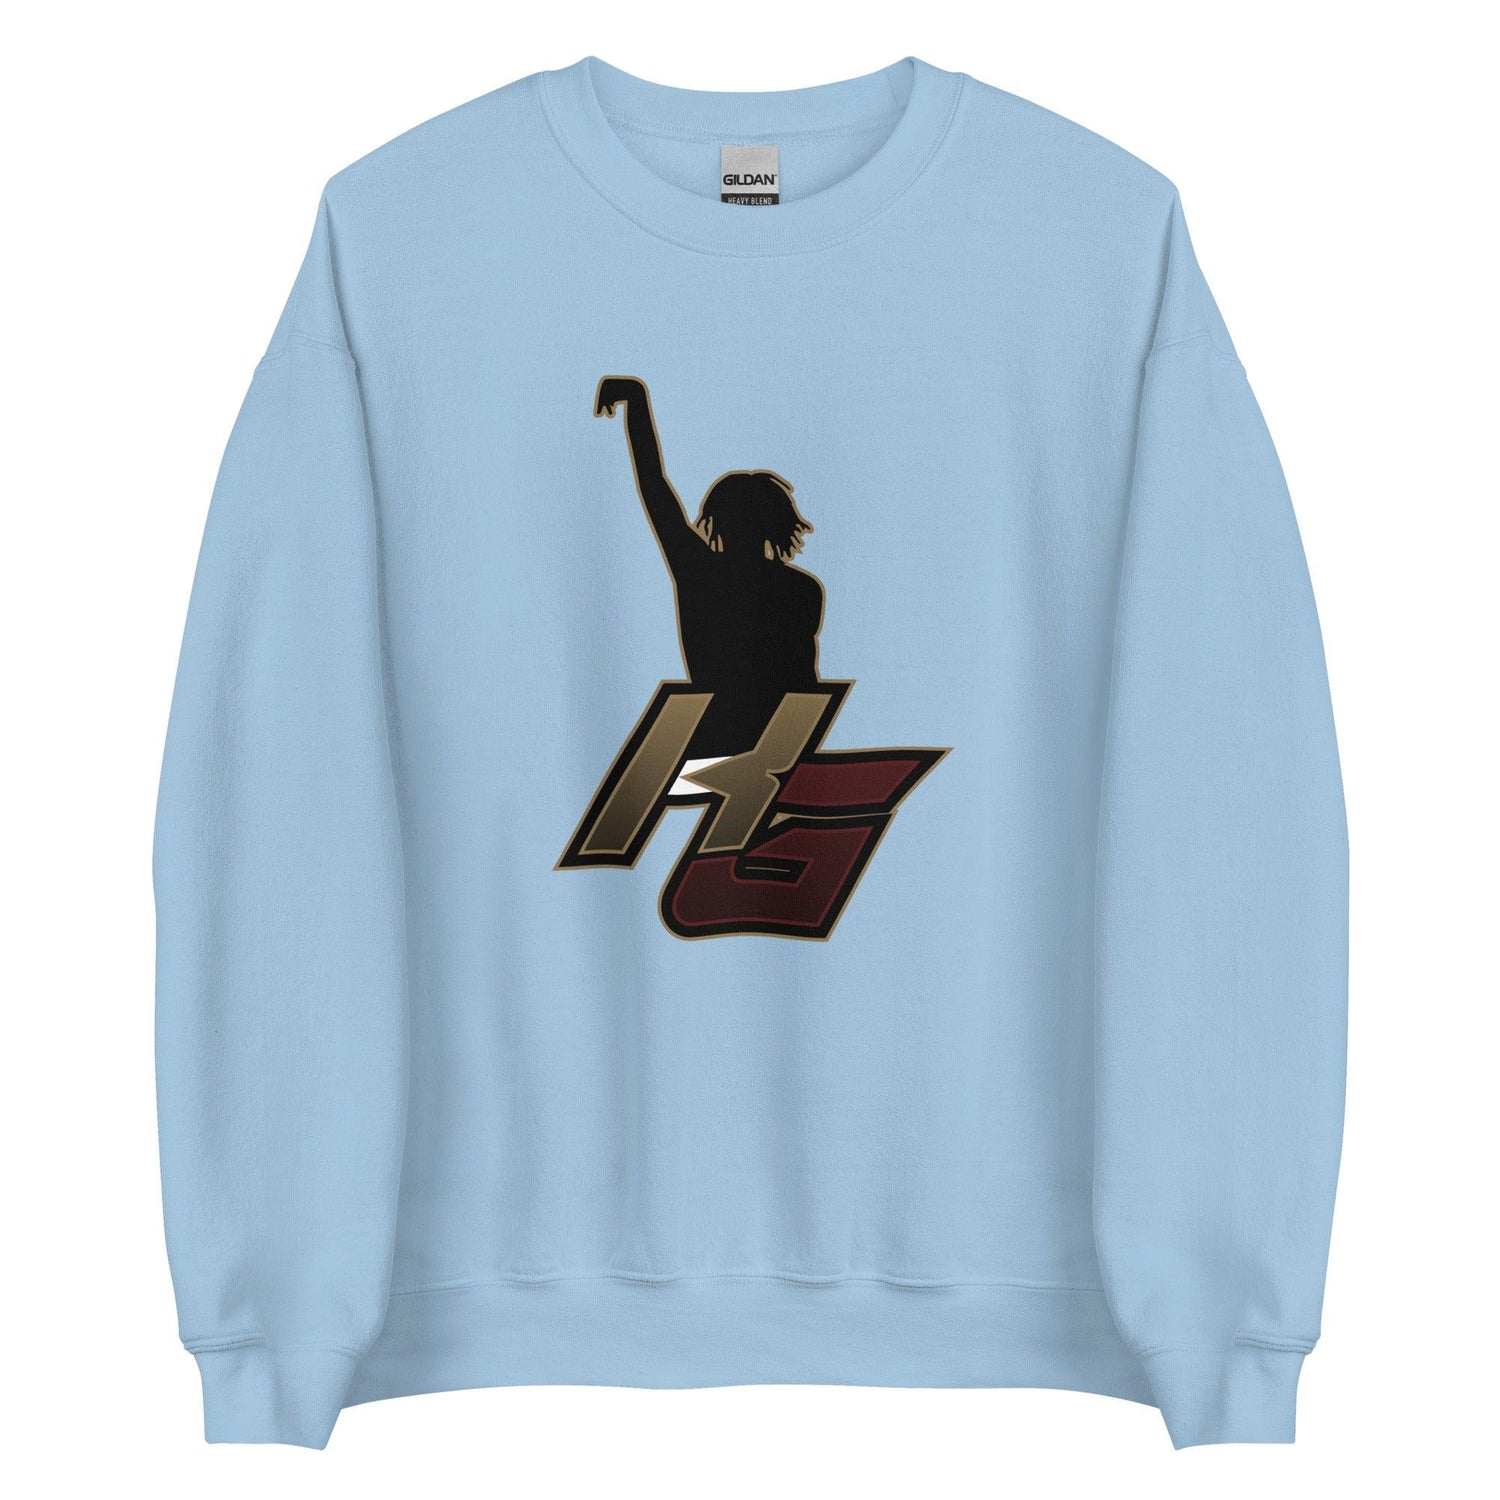 Kaden Gumbs "Essential" Sweatshirt - Fan Arch